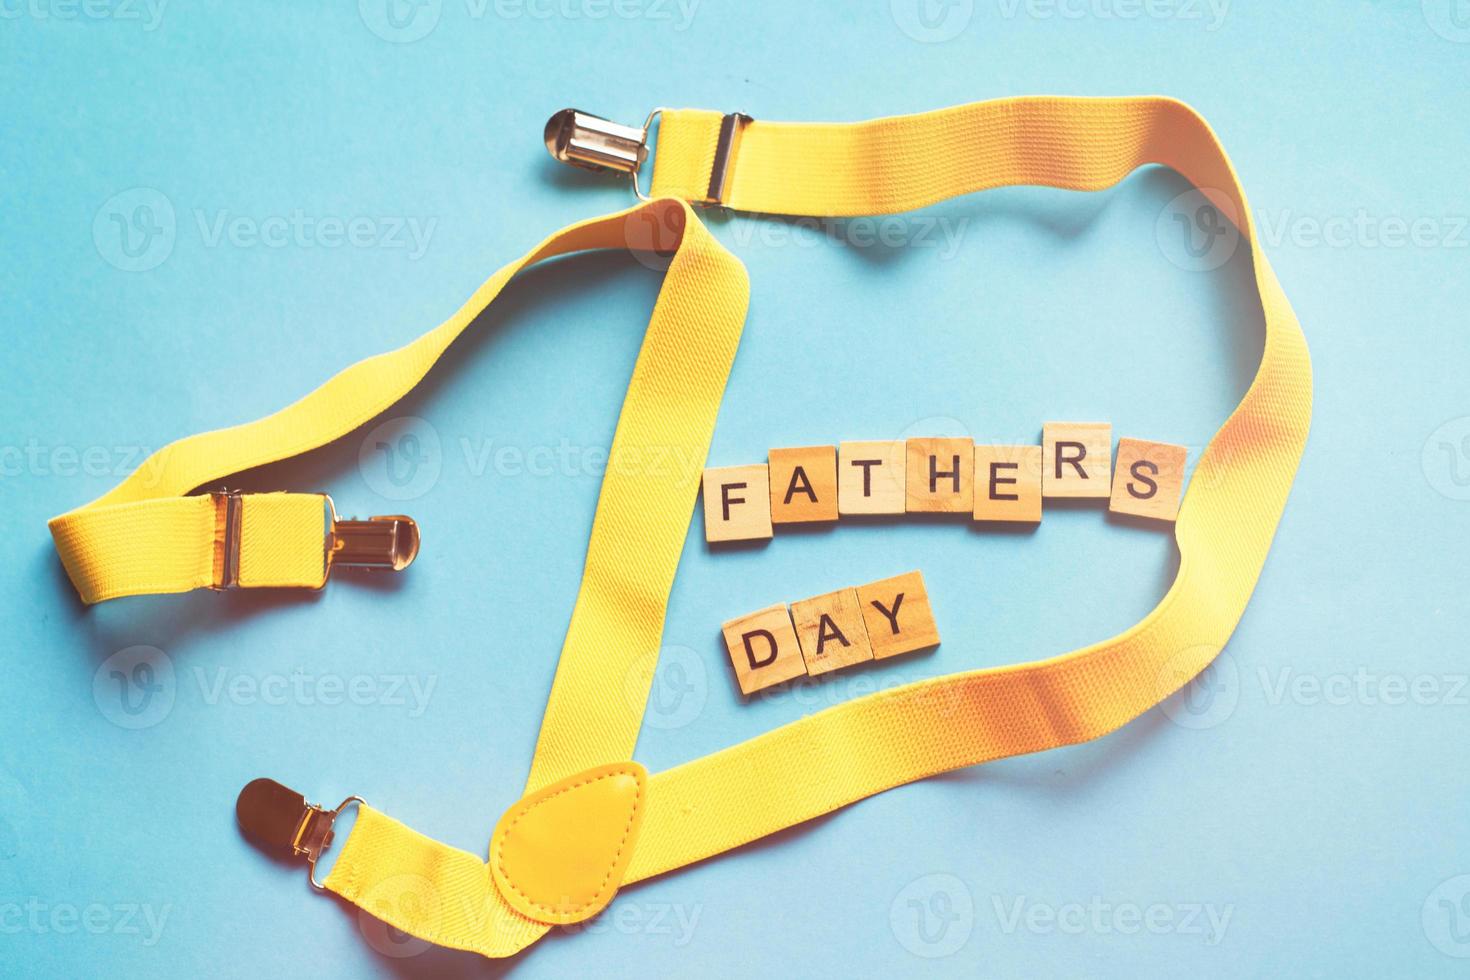 letras del día del padre feliz hechas con cubos de madera sobre un fondo azul con tirantes amarillos foto